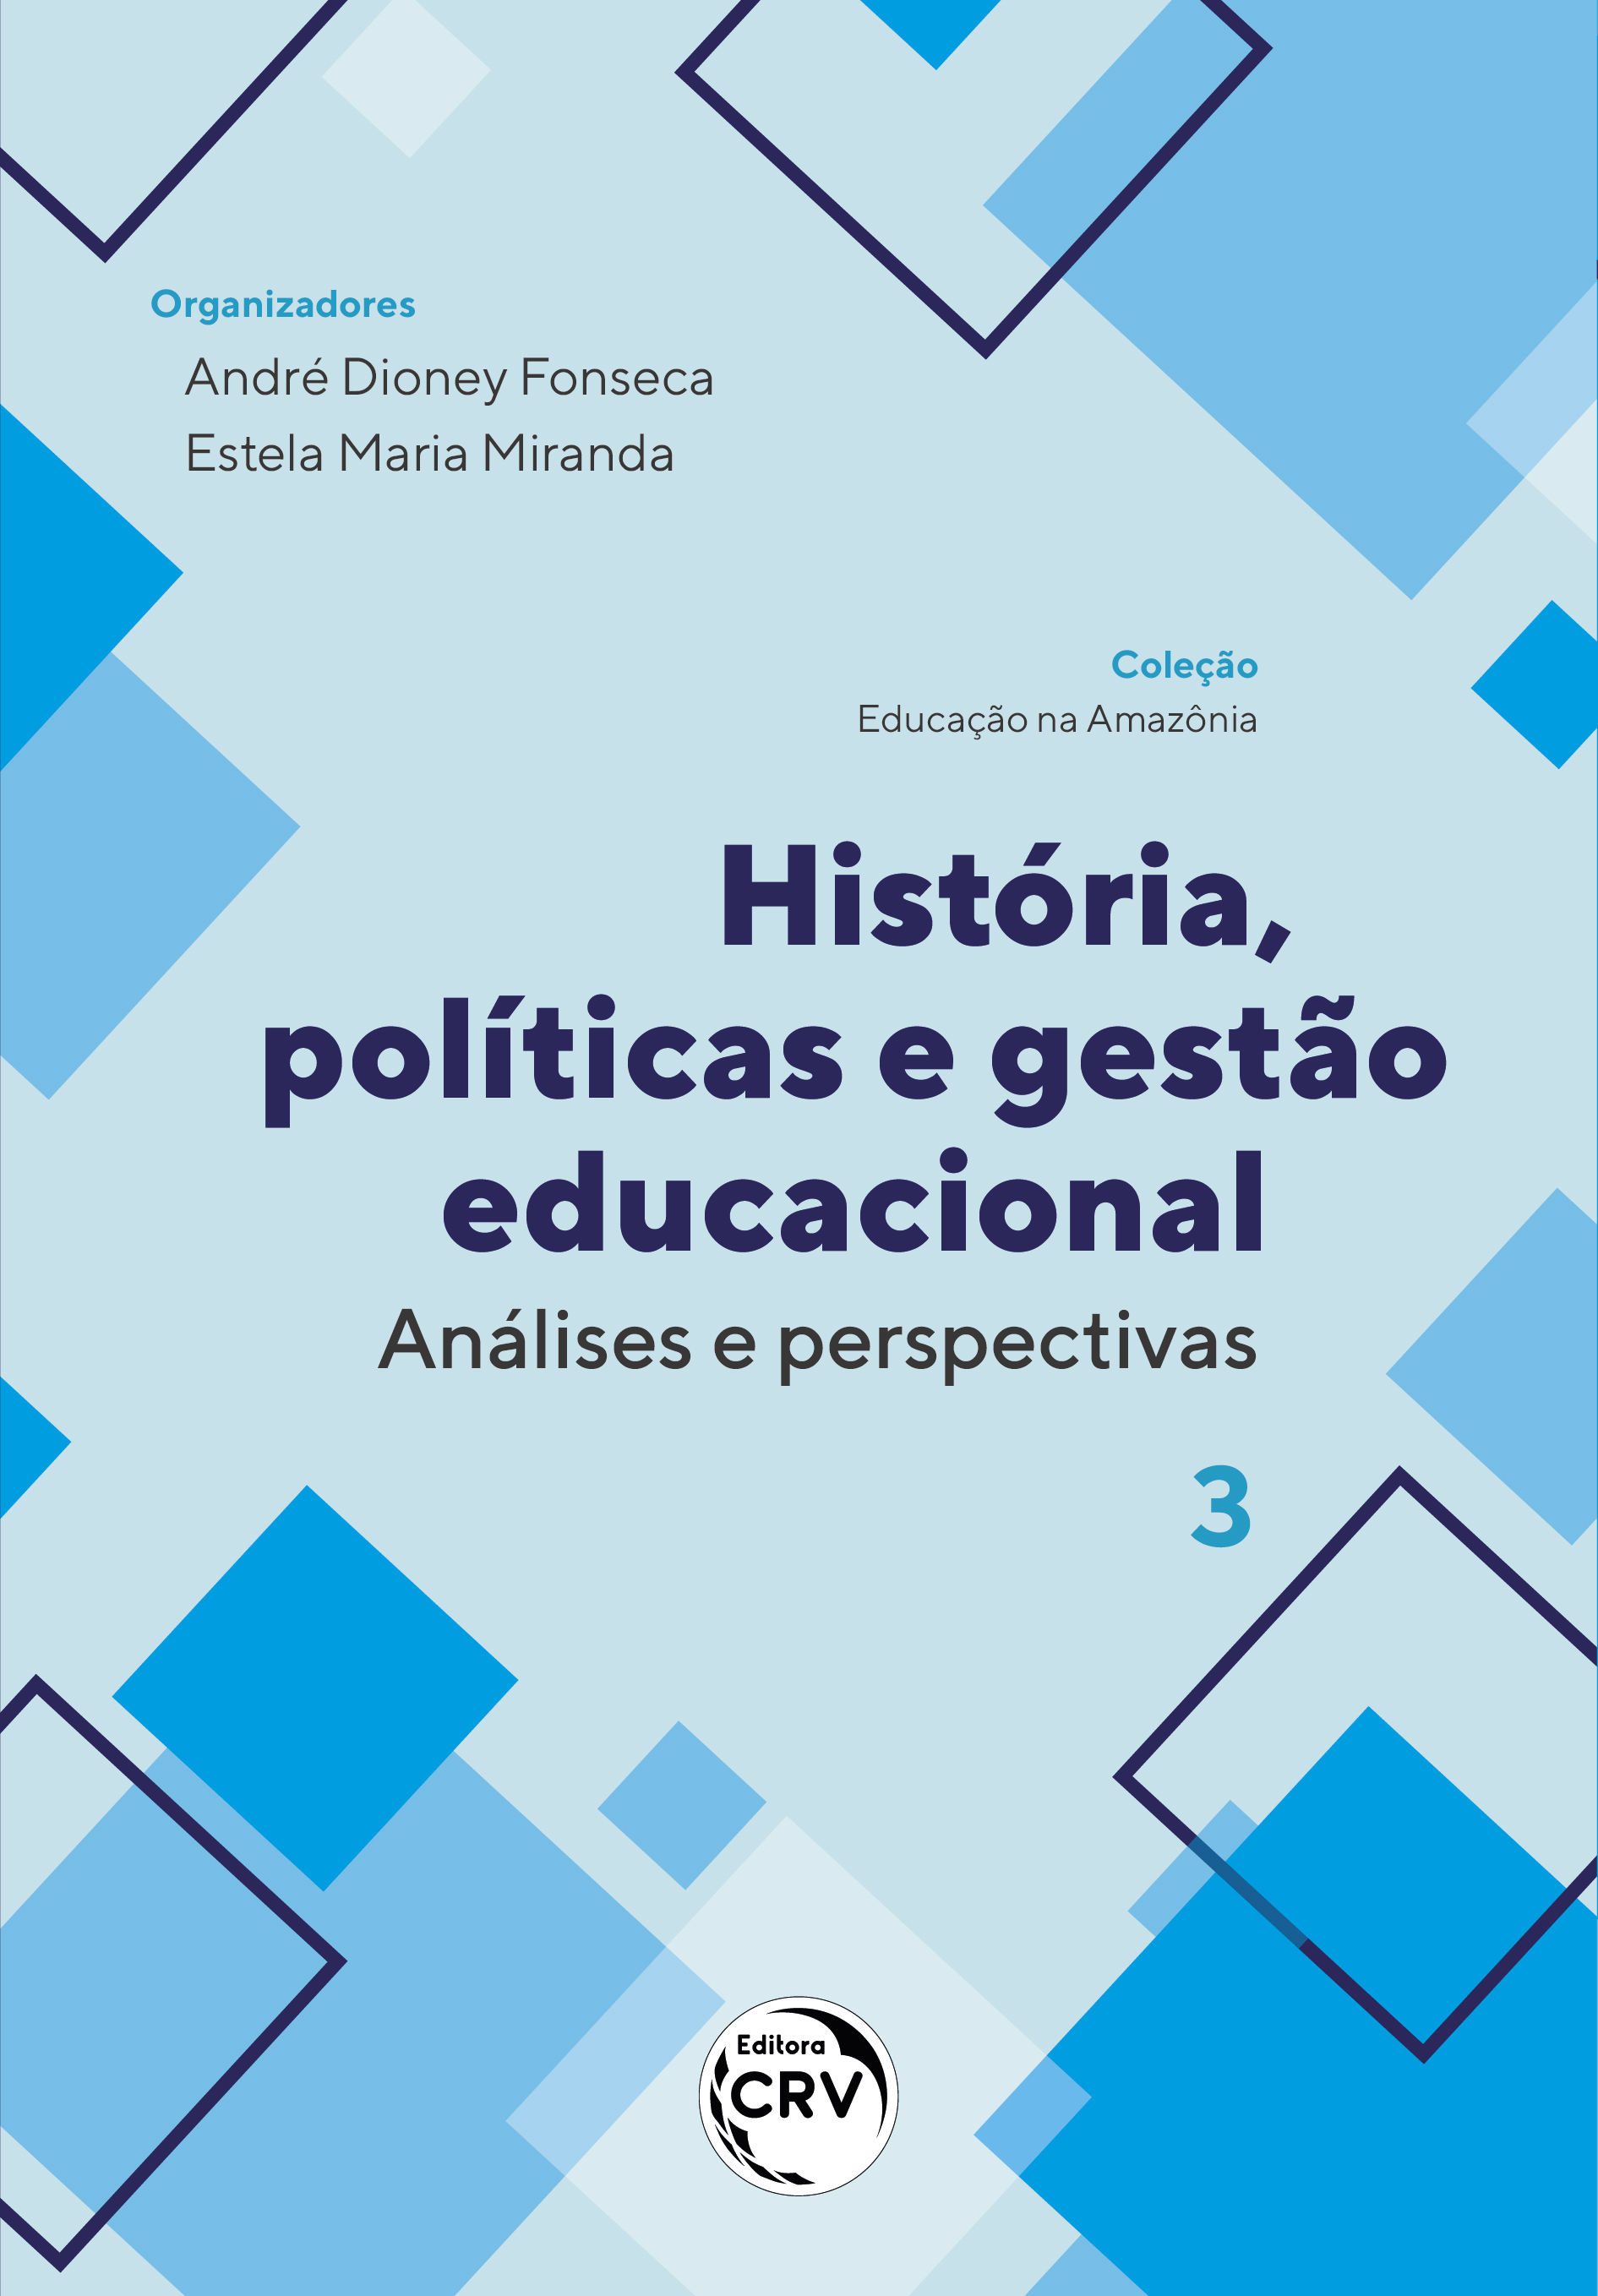 Capa do livro: HISTÓRIA, POLÍTICAS E GESTÃO EDUCACIONAL: <br>análises e perspectivas <br> Coleção Educação na Amazônia - Volume 3